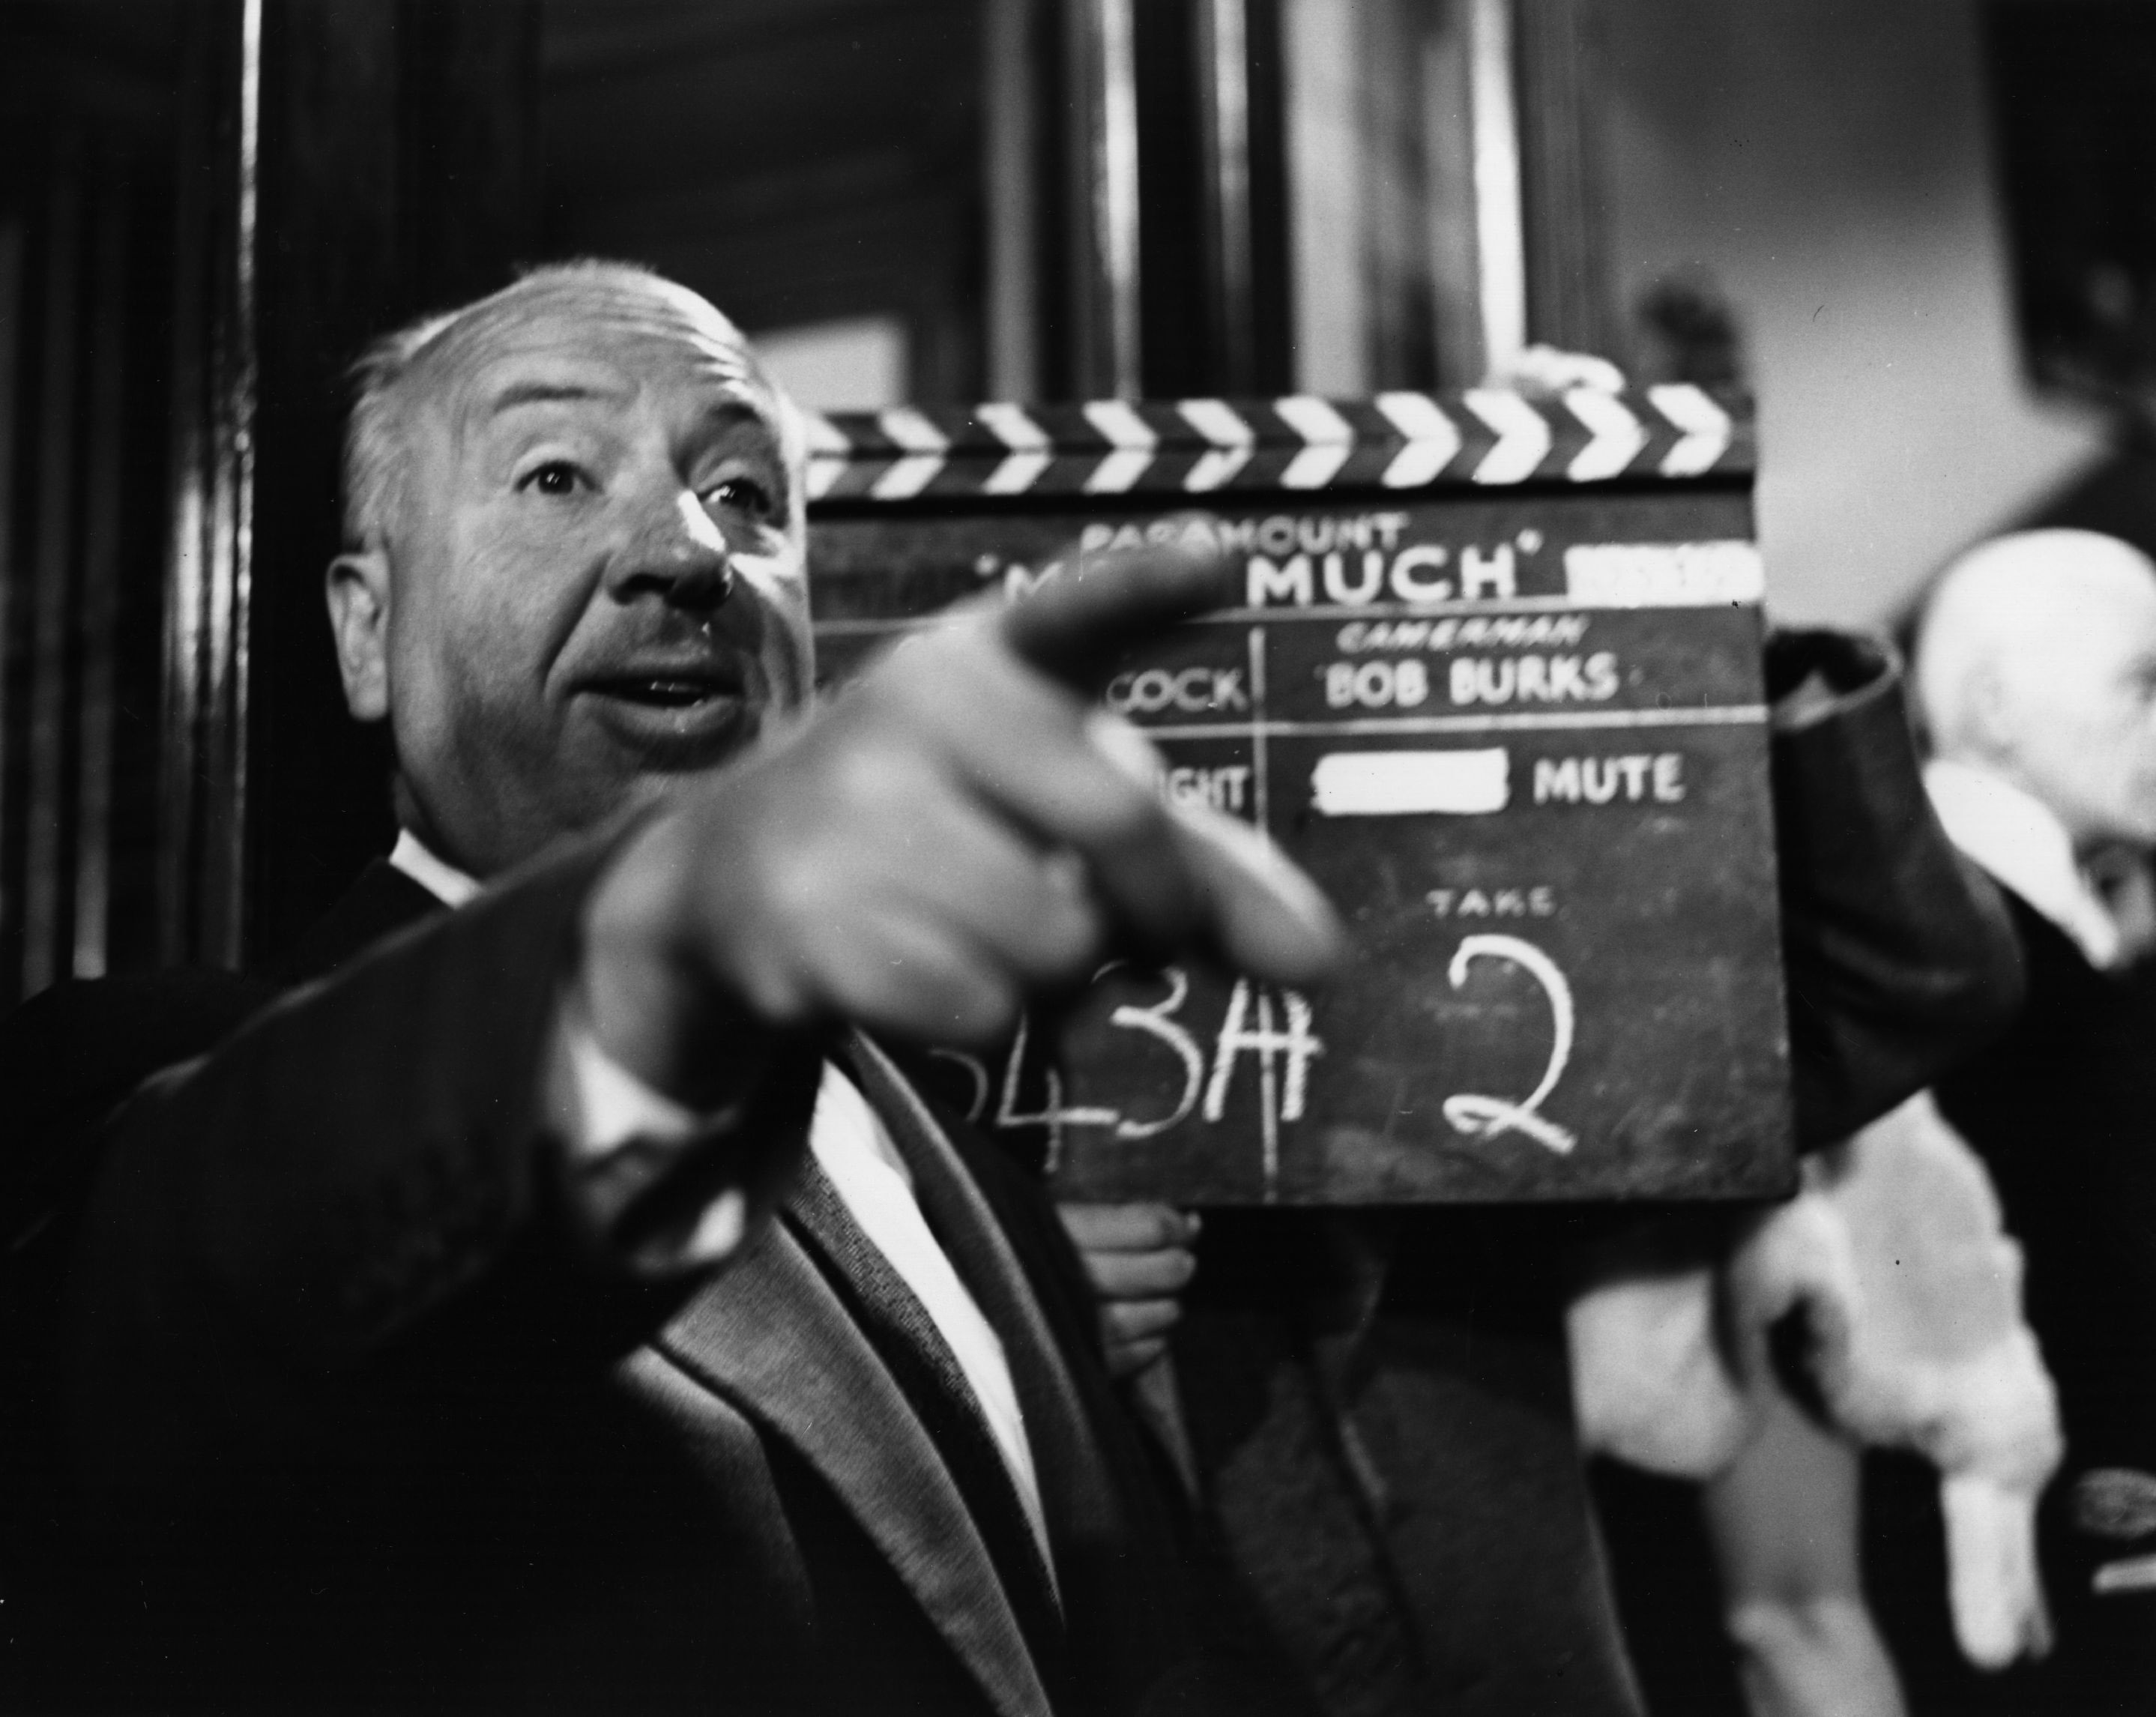 ‘Hitchcock, más allá del suspenso’ llega a la Cineteca Nacional